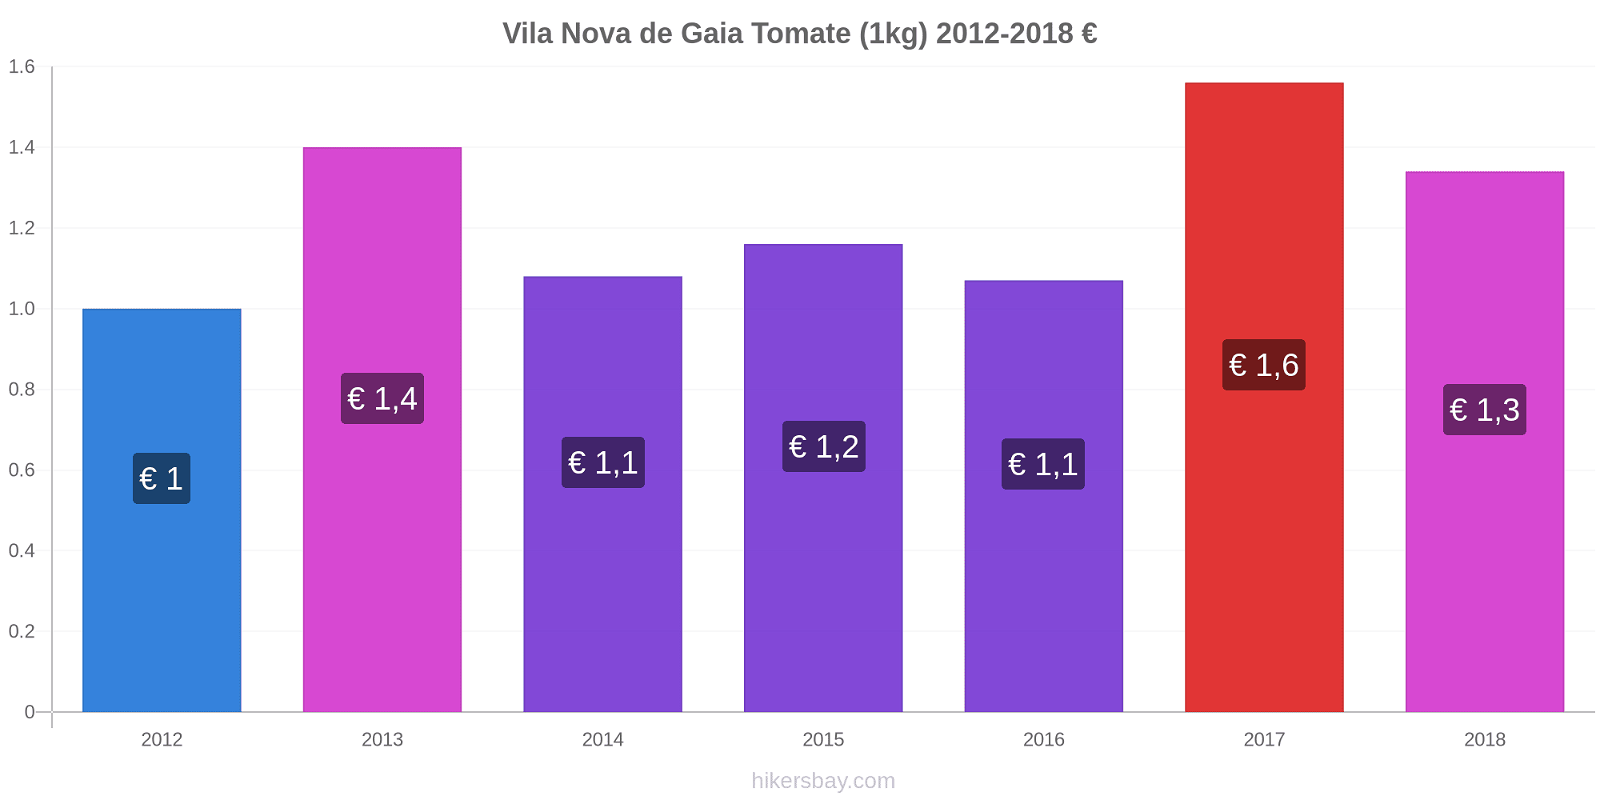 Vila Nova de Gaia variação de preço Tomate (1kg) hikersbay.com